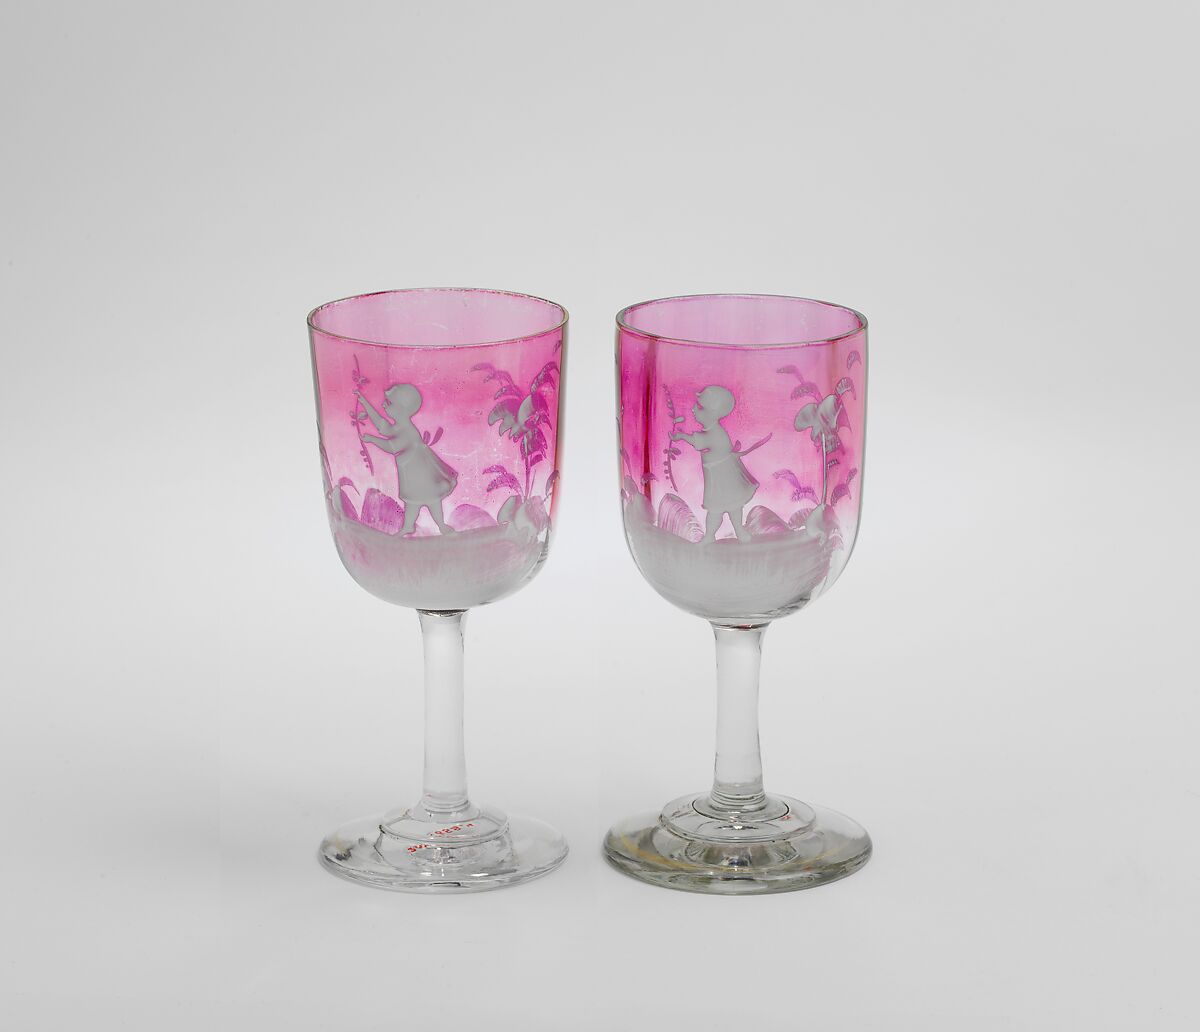 Liqueur glasses (part of a set), Glass; enamel, gilt, possibly French, Paris 